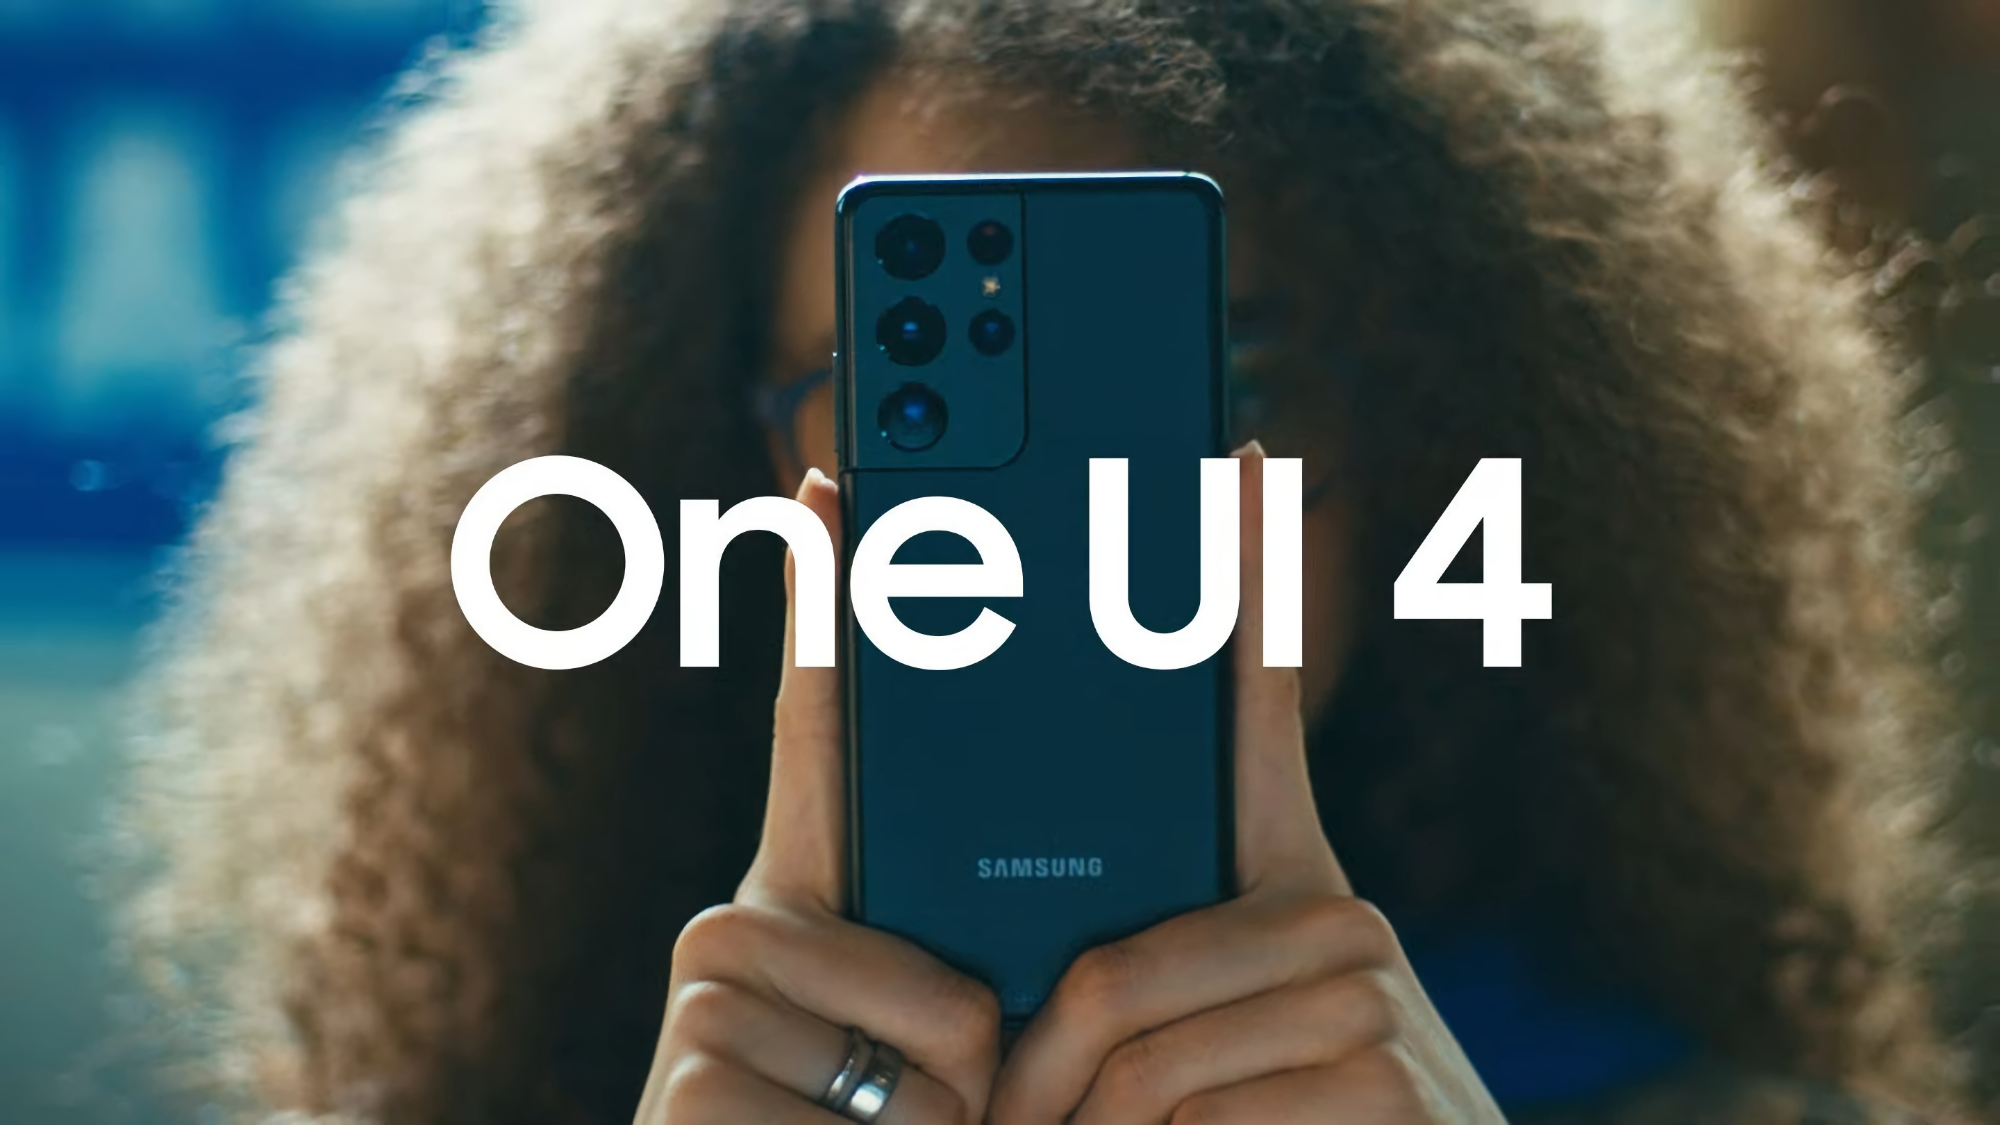 Samsung publie la troisième version bêta de One UI 4 pour le Galaxy S21, avec suppression des publicités, nouvelles animations et application météo